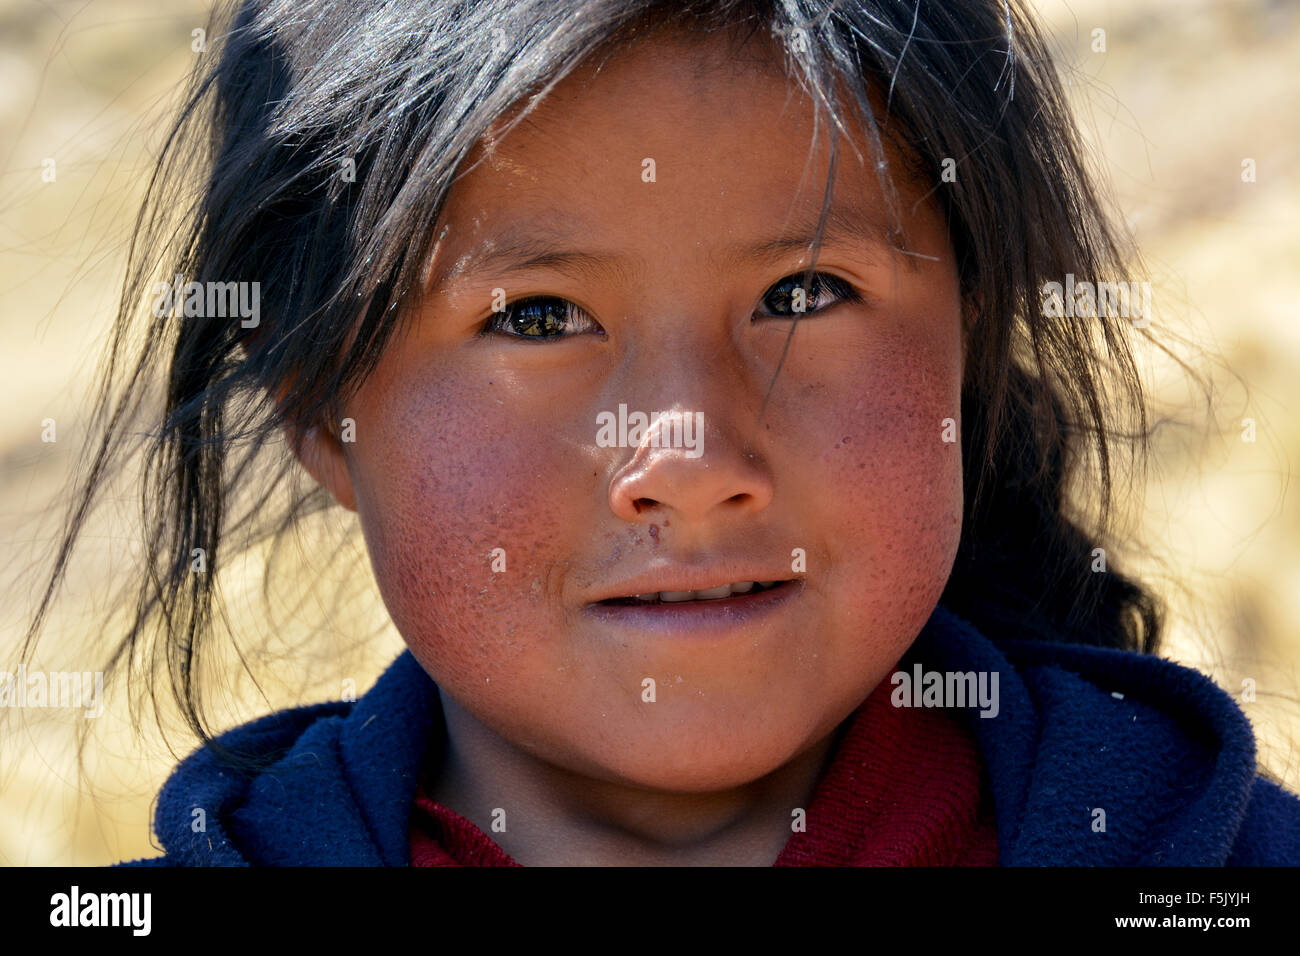 native-peruvian-girl-portrait-cusco-peru-F5JYJH.jpg